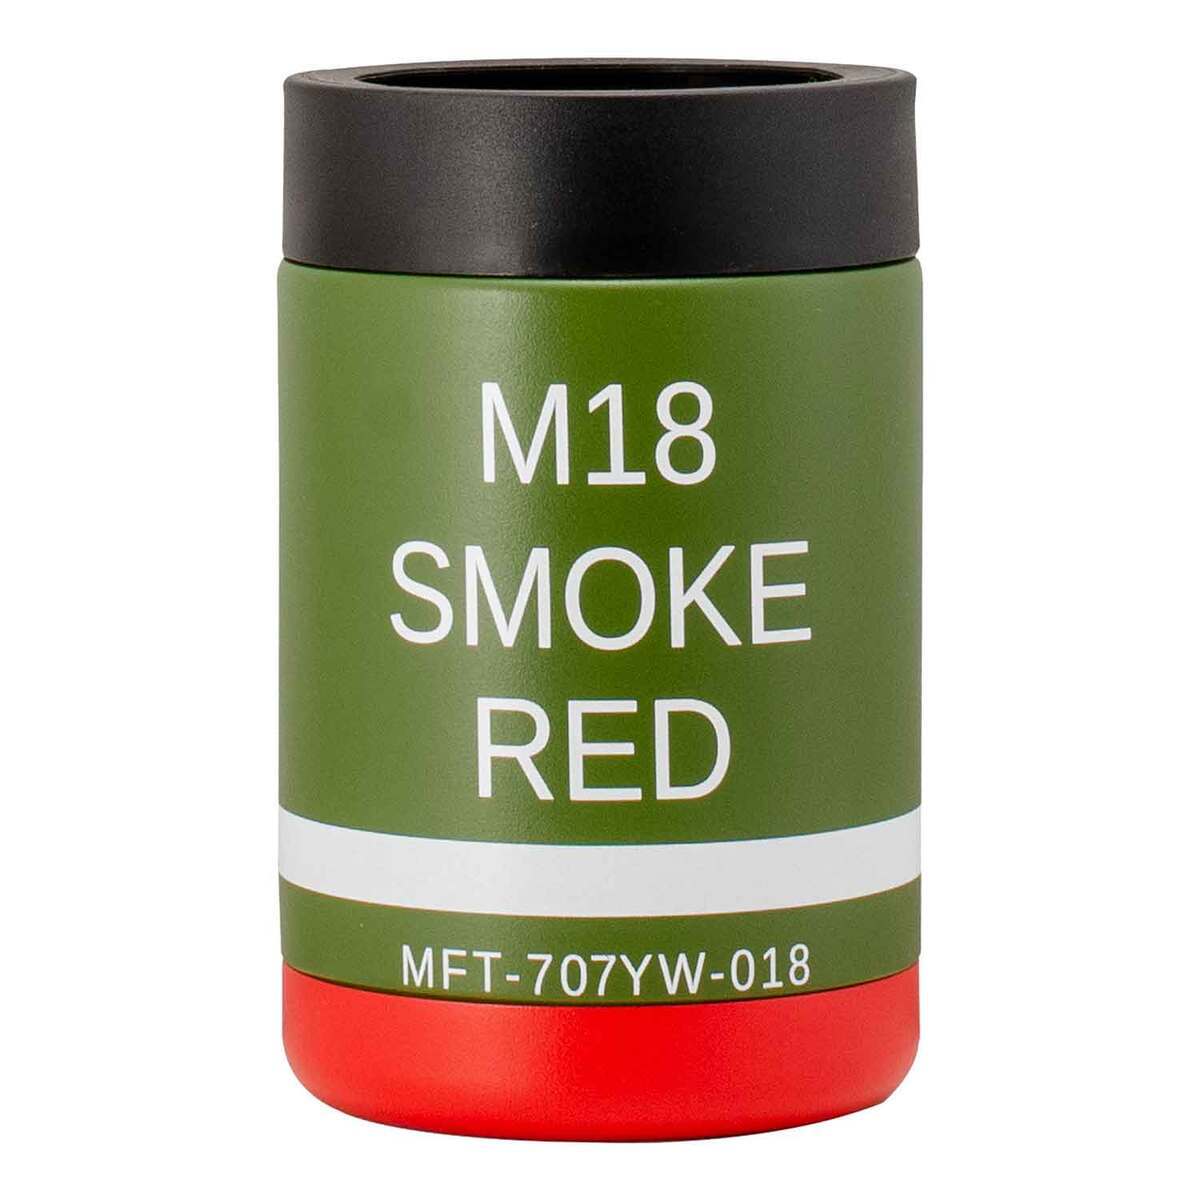 https://www.sportsmans.com/medias/mission-first-tactical-m18-red-smoke-12oz-can-cooler-green-1739721-1.jpg?context=bWFzdGVyfGltYWdlc3w2Nzg1N3xpbWFnZS9qcGVnfGgyNy9oZDAvMTA3MzM3NTQ1ODEwMjIvMTczOTcyMS0xX2Jhc2UtY29udmVyc2lvbkZvcm1hdF8xMjAwLWNvbnZlcnNpb25Gb3JtYXR8ZDBlNGU1YjA5OTNjMmNiNmY1OGEzMGI3YWFiZTIxZDNjOTAxOGJiMTc5MTY1OTE1MmI1Mzk5MjRmZGFkMTJiZg